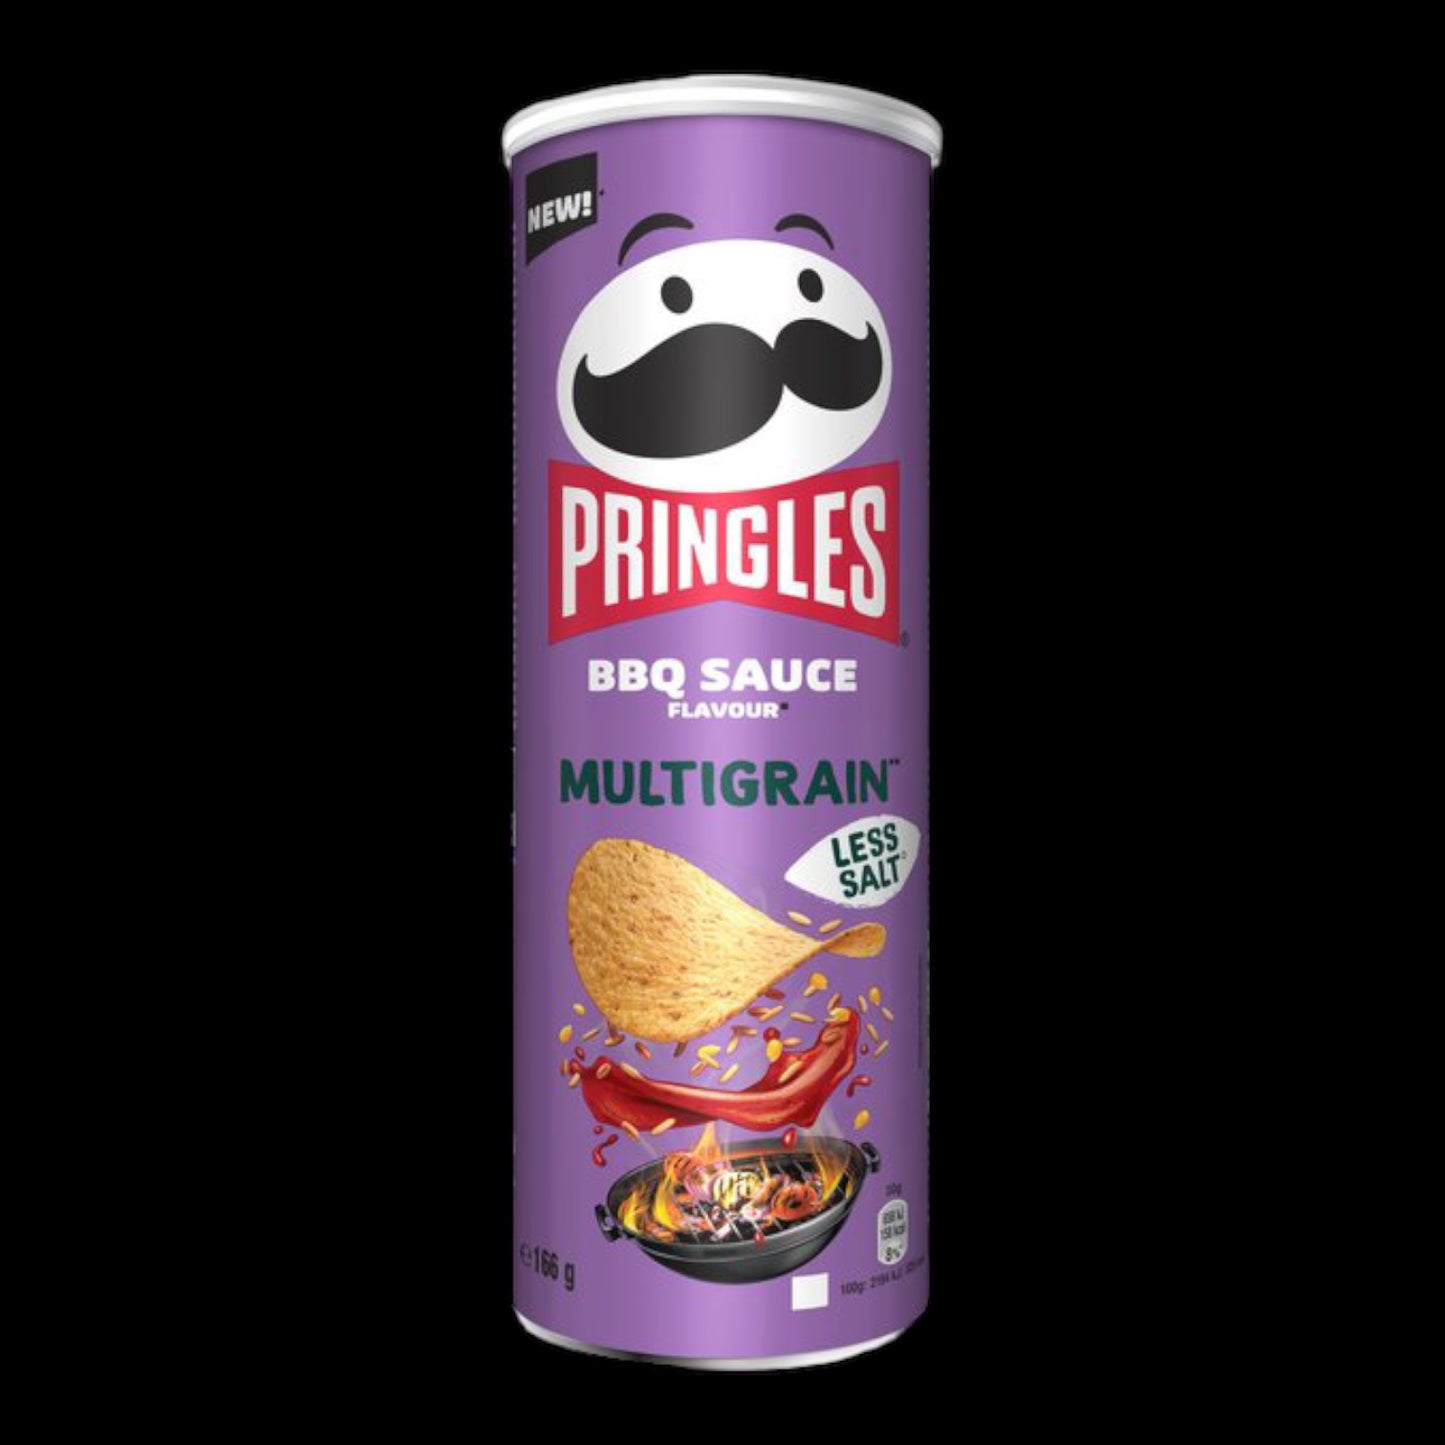 Pringles Multigrain BBQ Sauce 166g